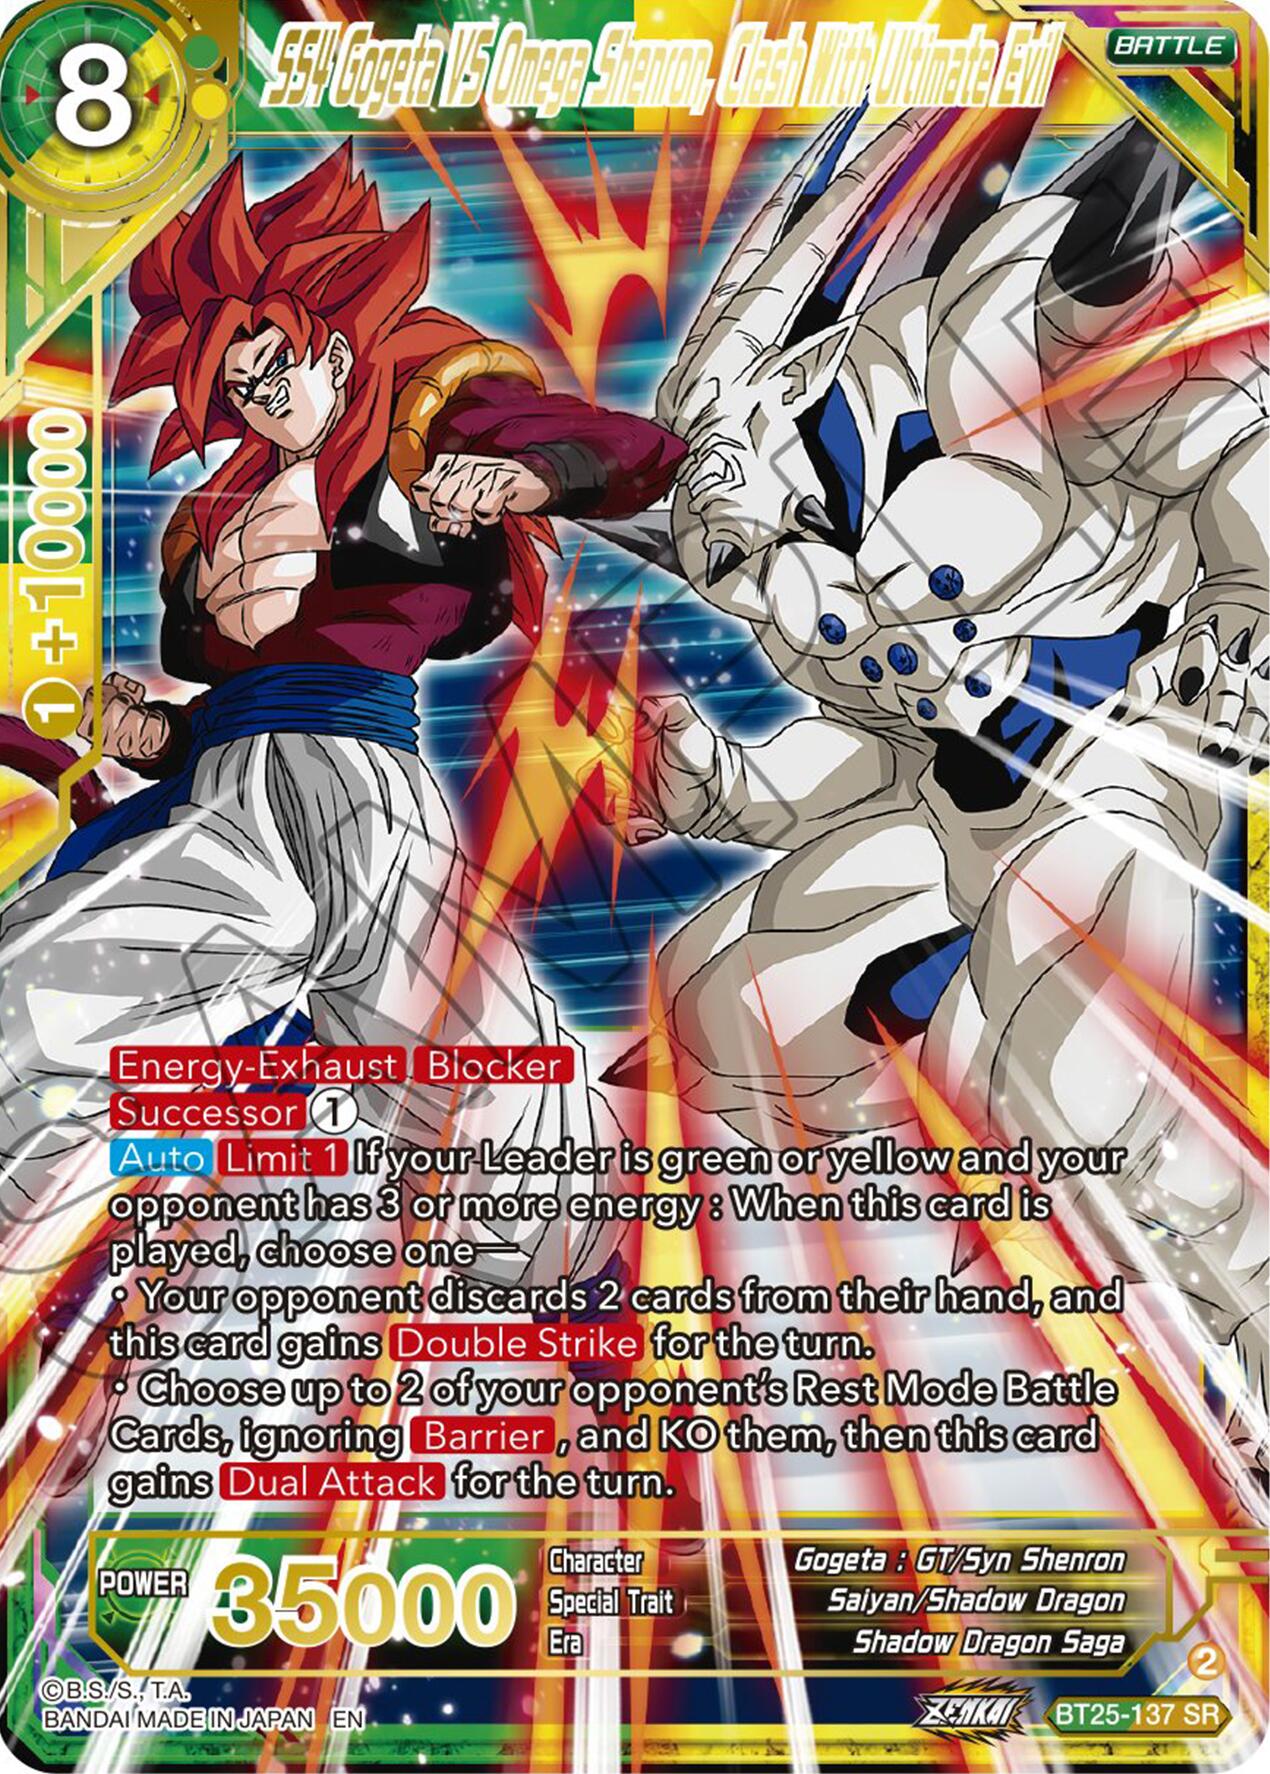 SS4 Gogeta VS Omega Shenron, Clash With Ultimate Evil (BT25-137 SR) [Legend of the Dragon Balls] | Devastation Store